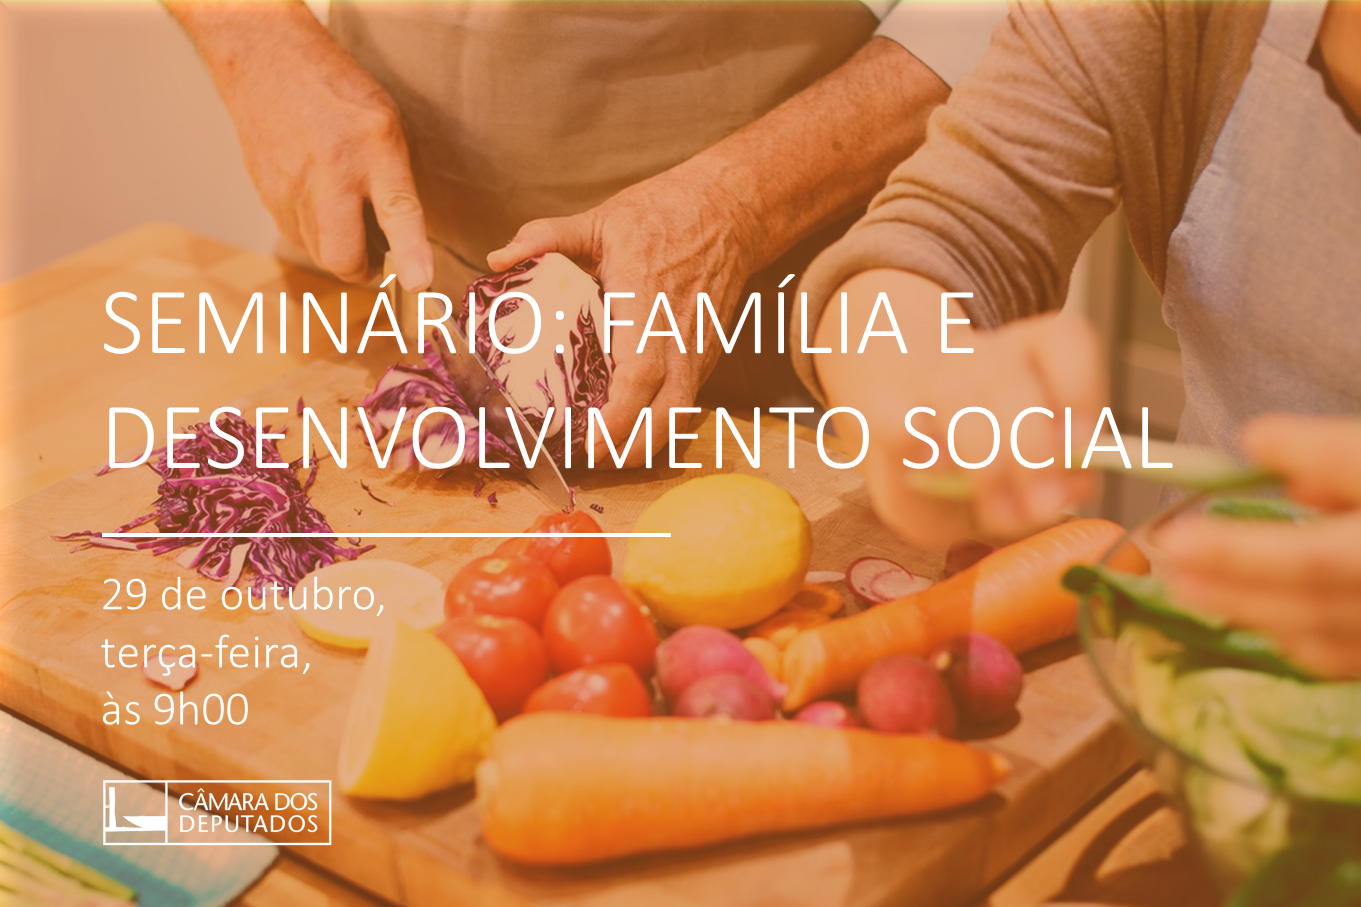 Seminário Família e Desenvolvimento Social vai debater o equilíbrio do trabalho na família